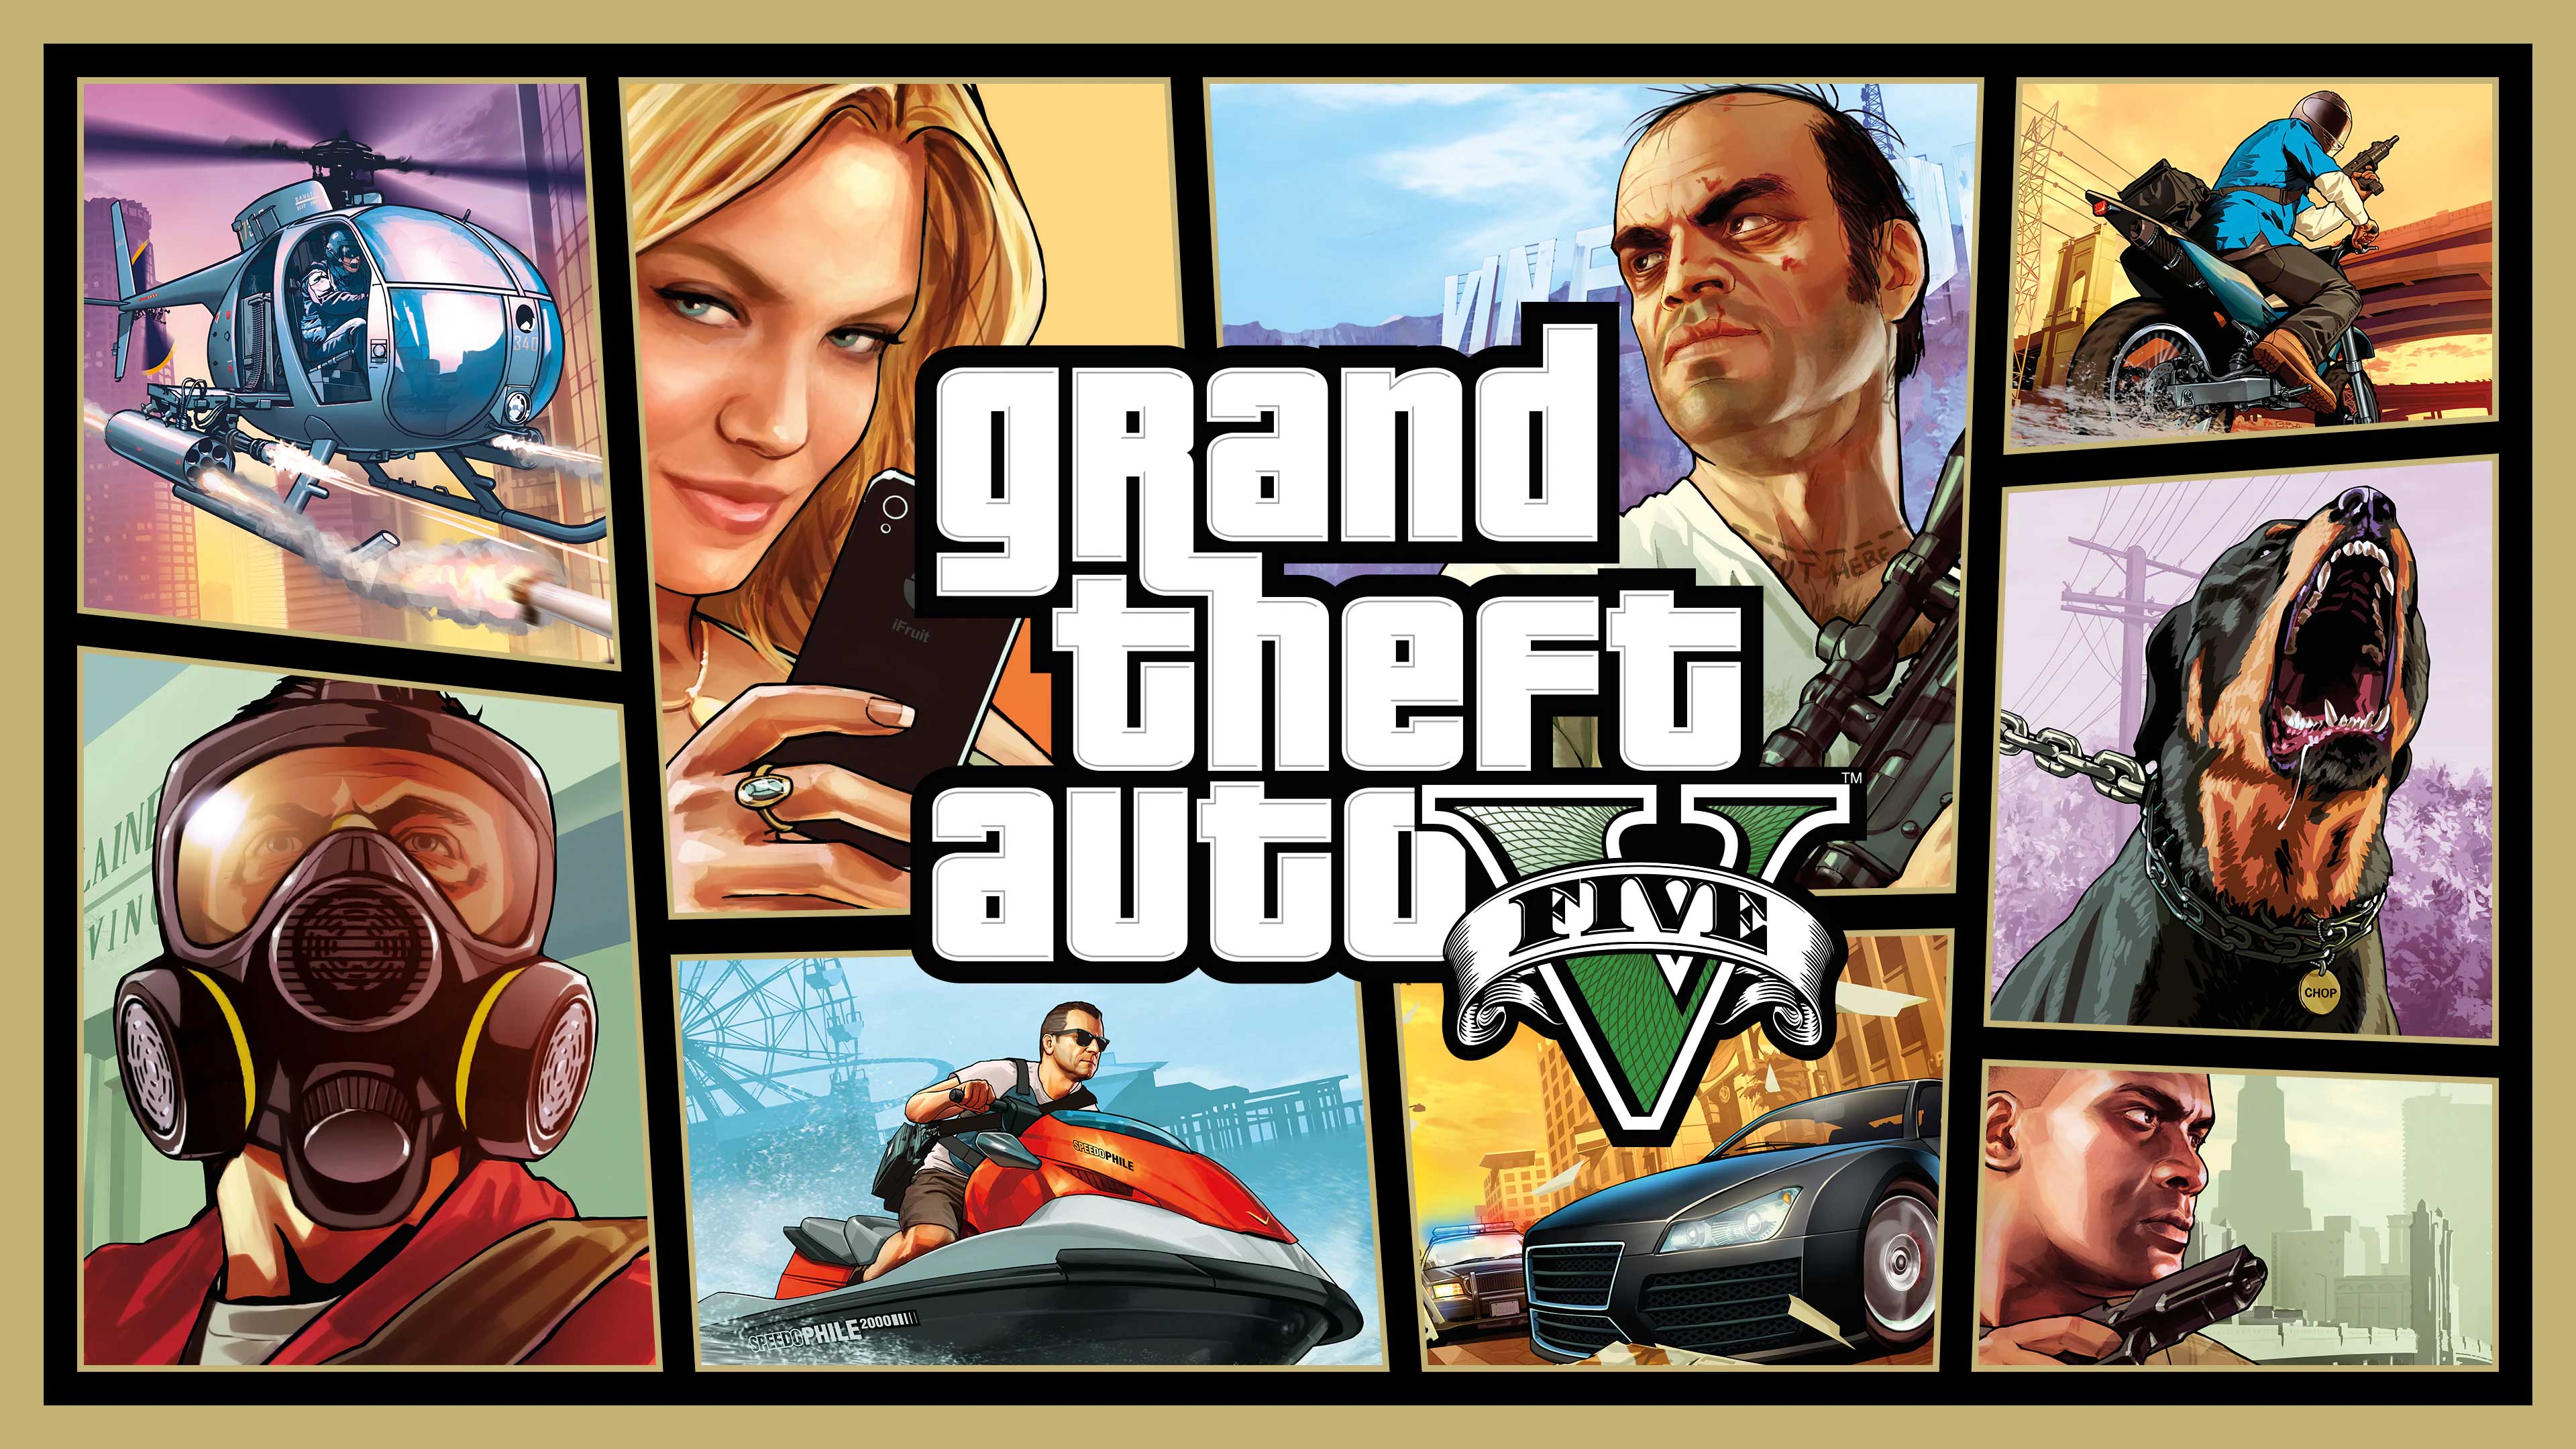 Grand Theft Auto V, U R Main Player, urmainplayer.com